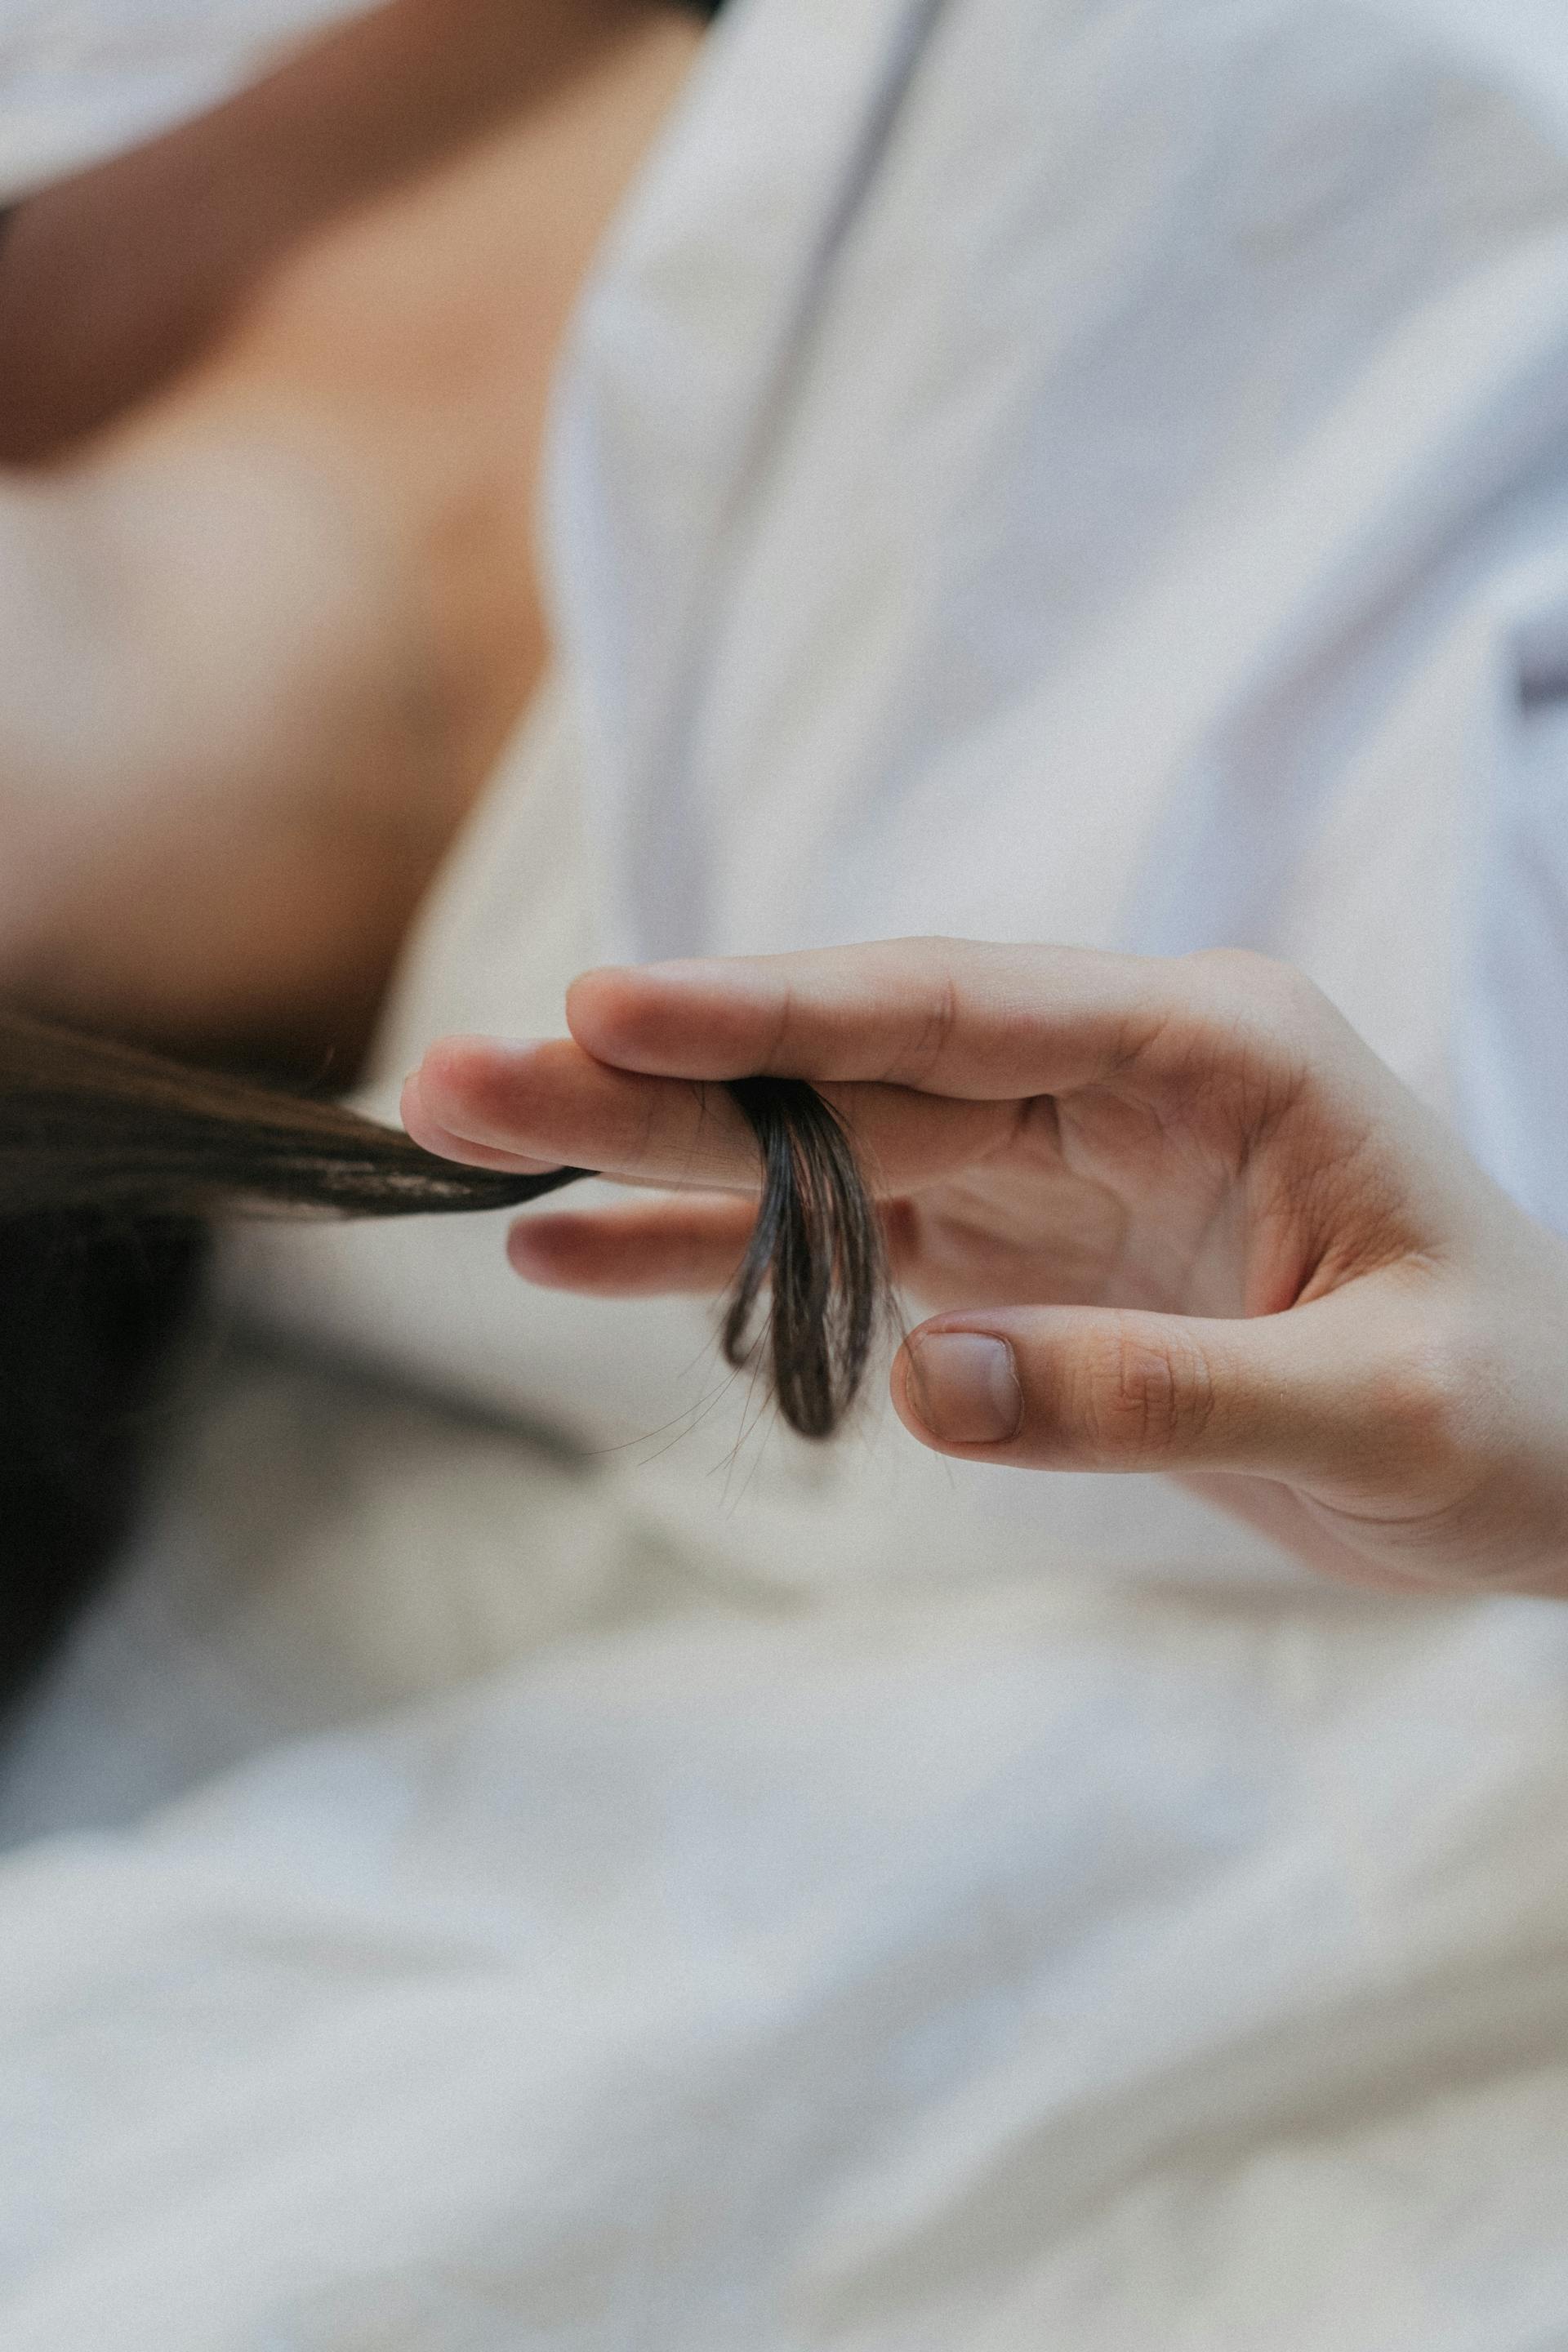 Une personne qui tortille une mèche de cheveux | Source : Pexels